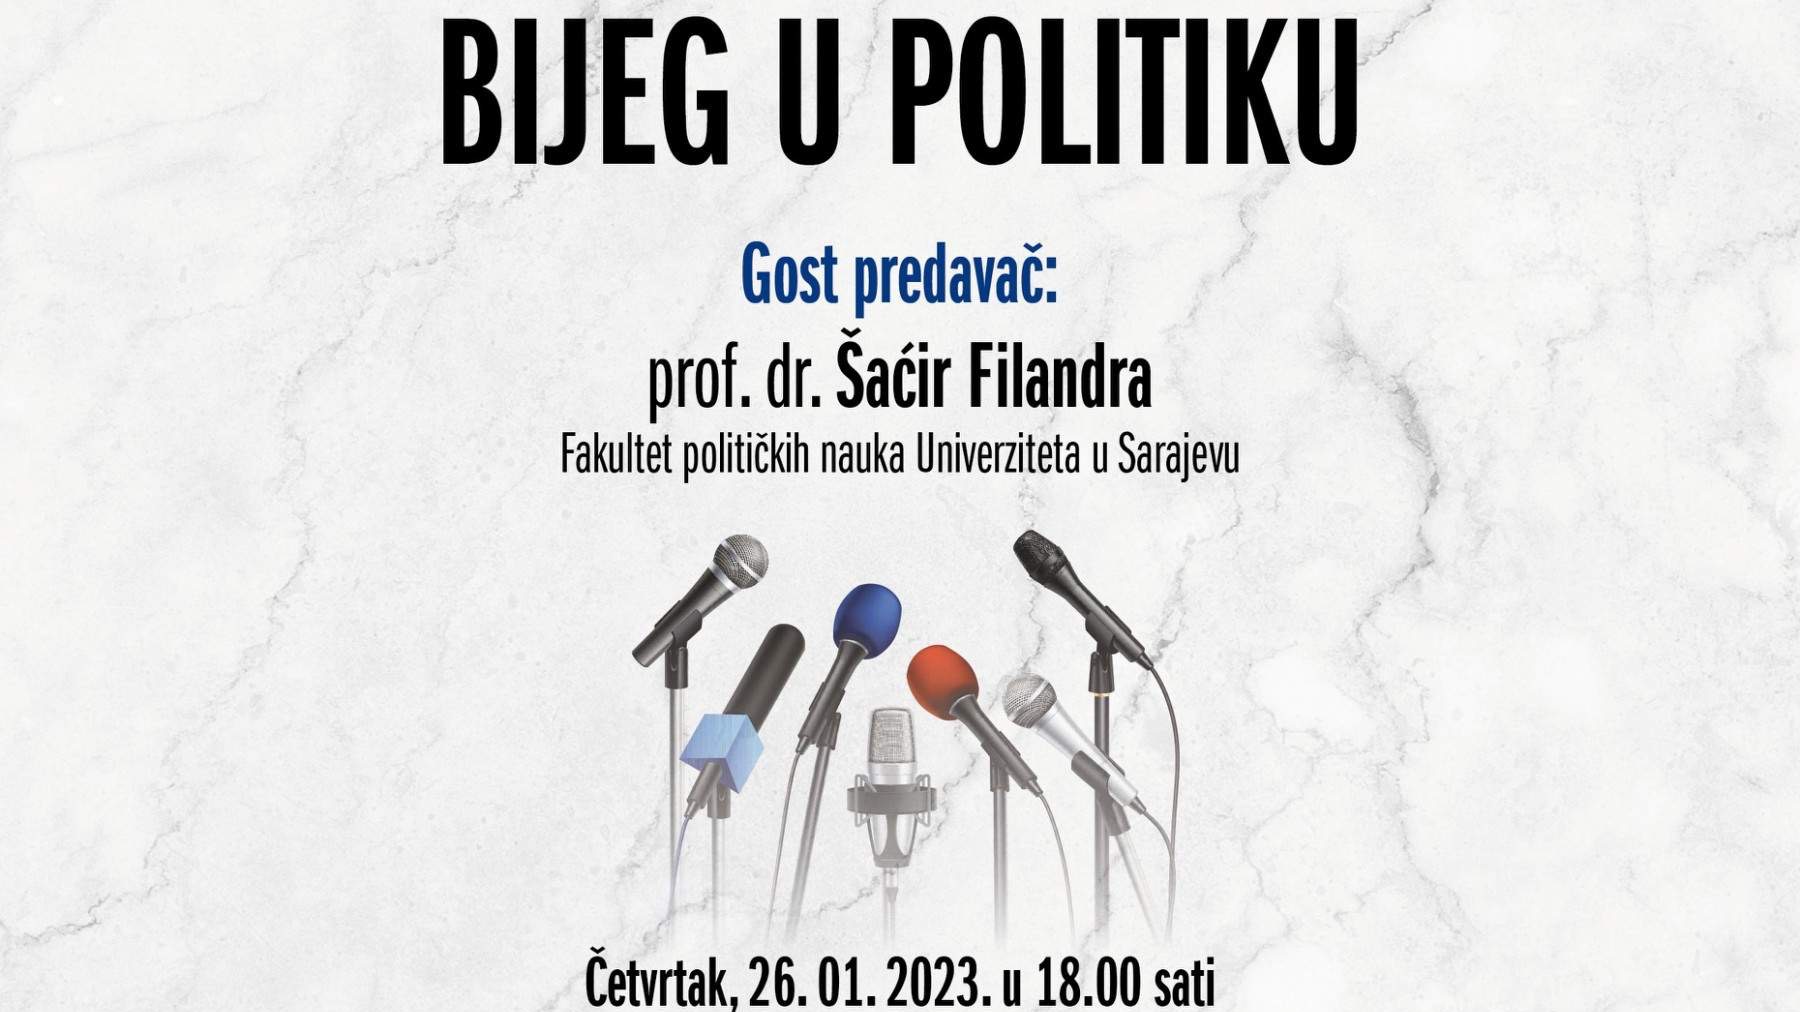 FIN: Tribina "Bijeg u politiku" 26. januara, predavač prof. dr. Šaćir Filandra